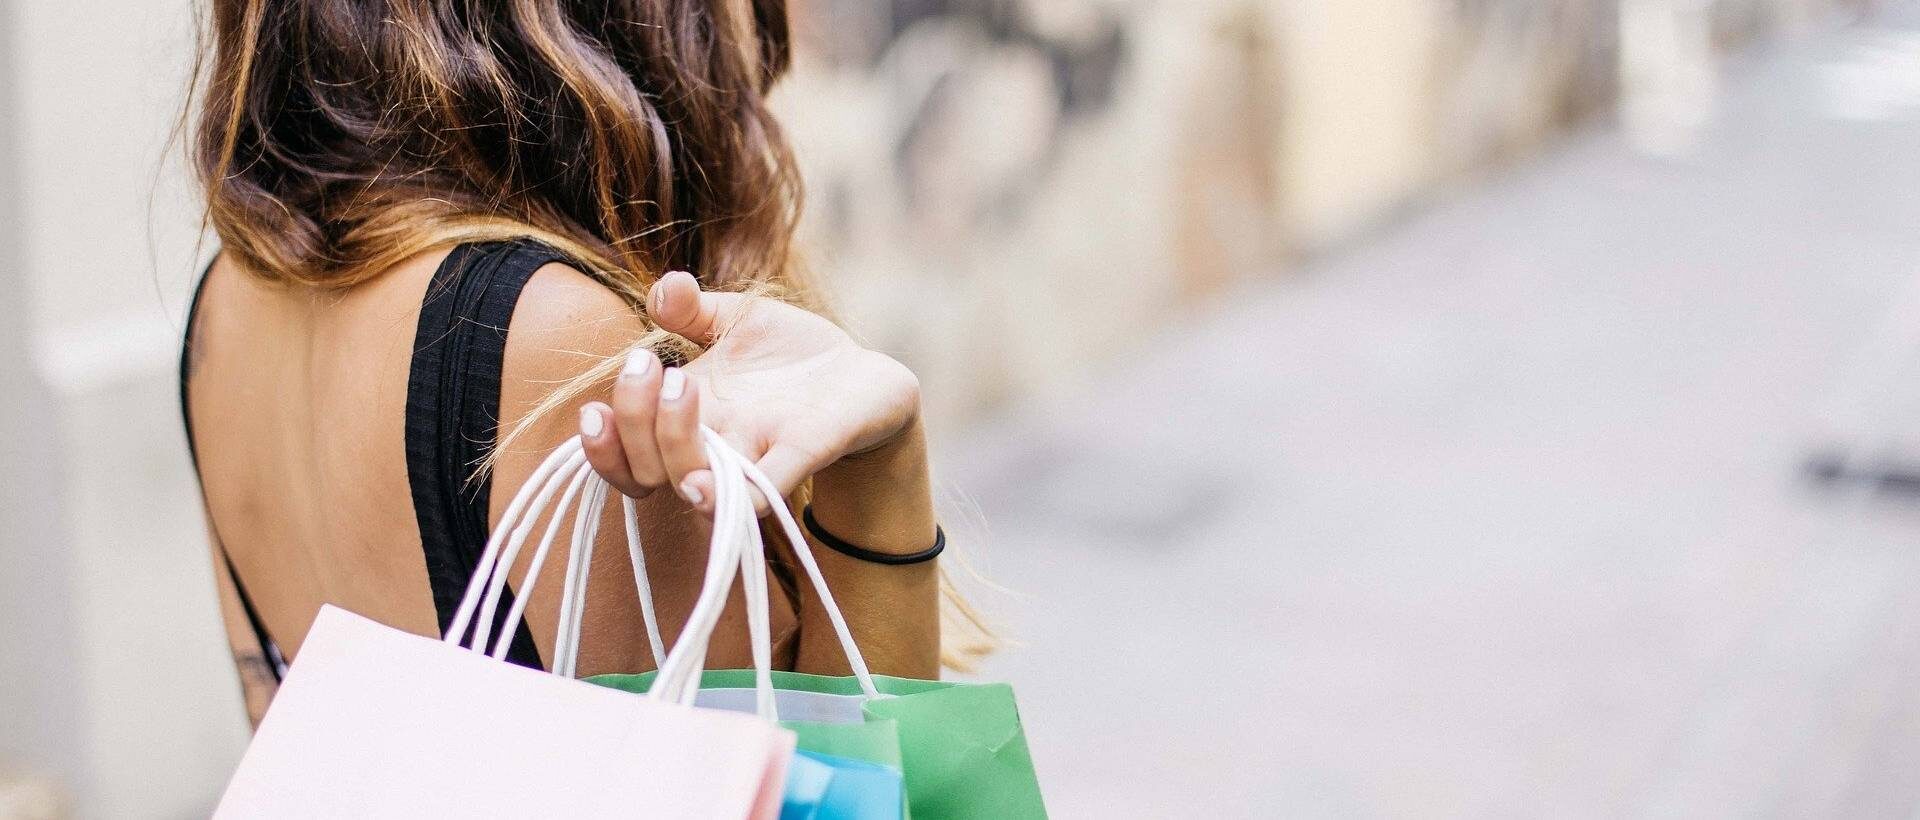 Eine Frau hält verschiedene Einkaufstüten über der Schulter, was sinnbildlich für die Shopping-Erfahrung steht.